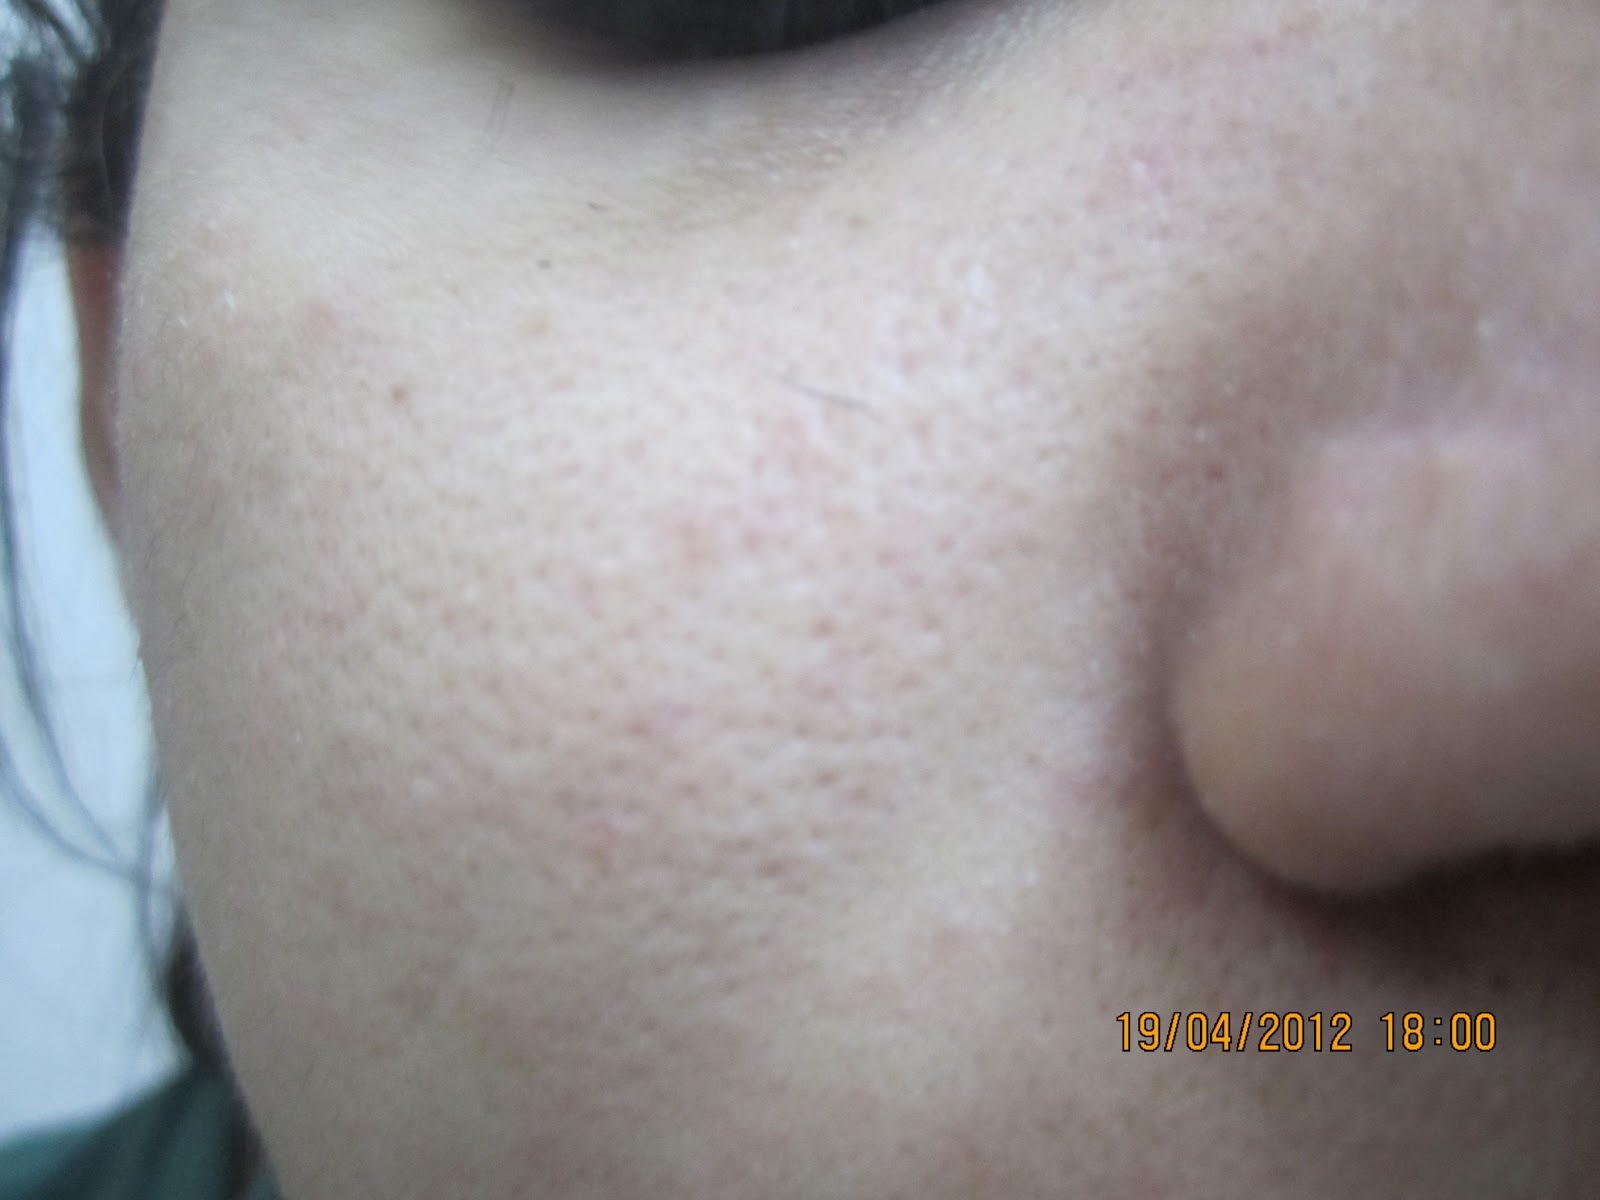 Dry Skin Open Pores Face